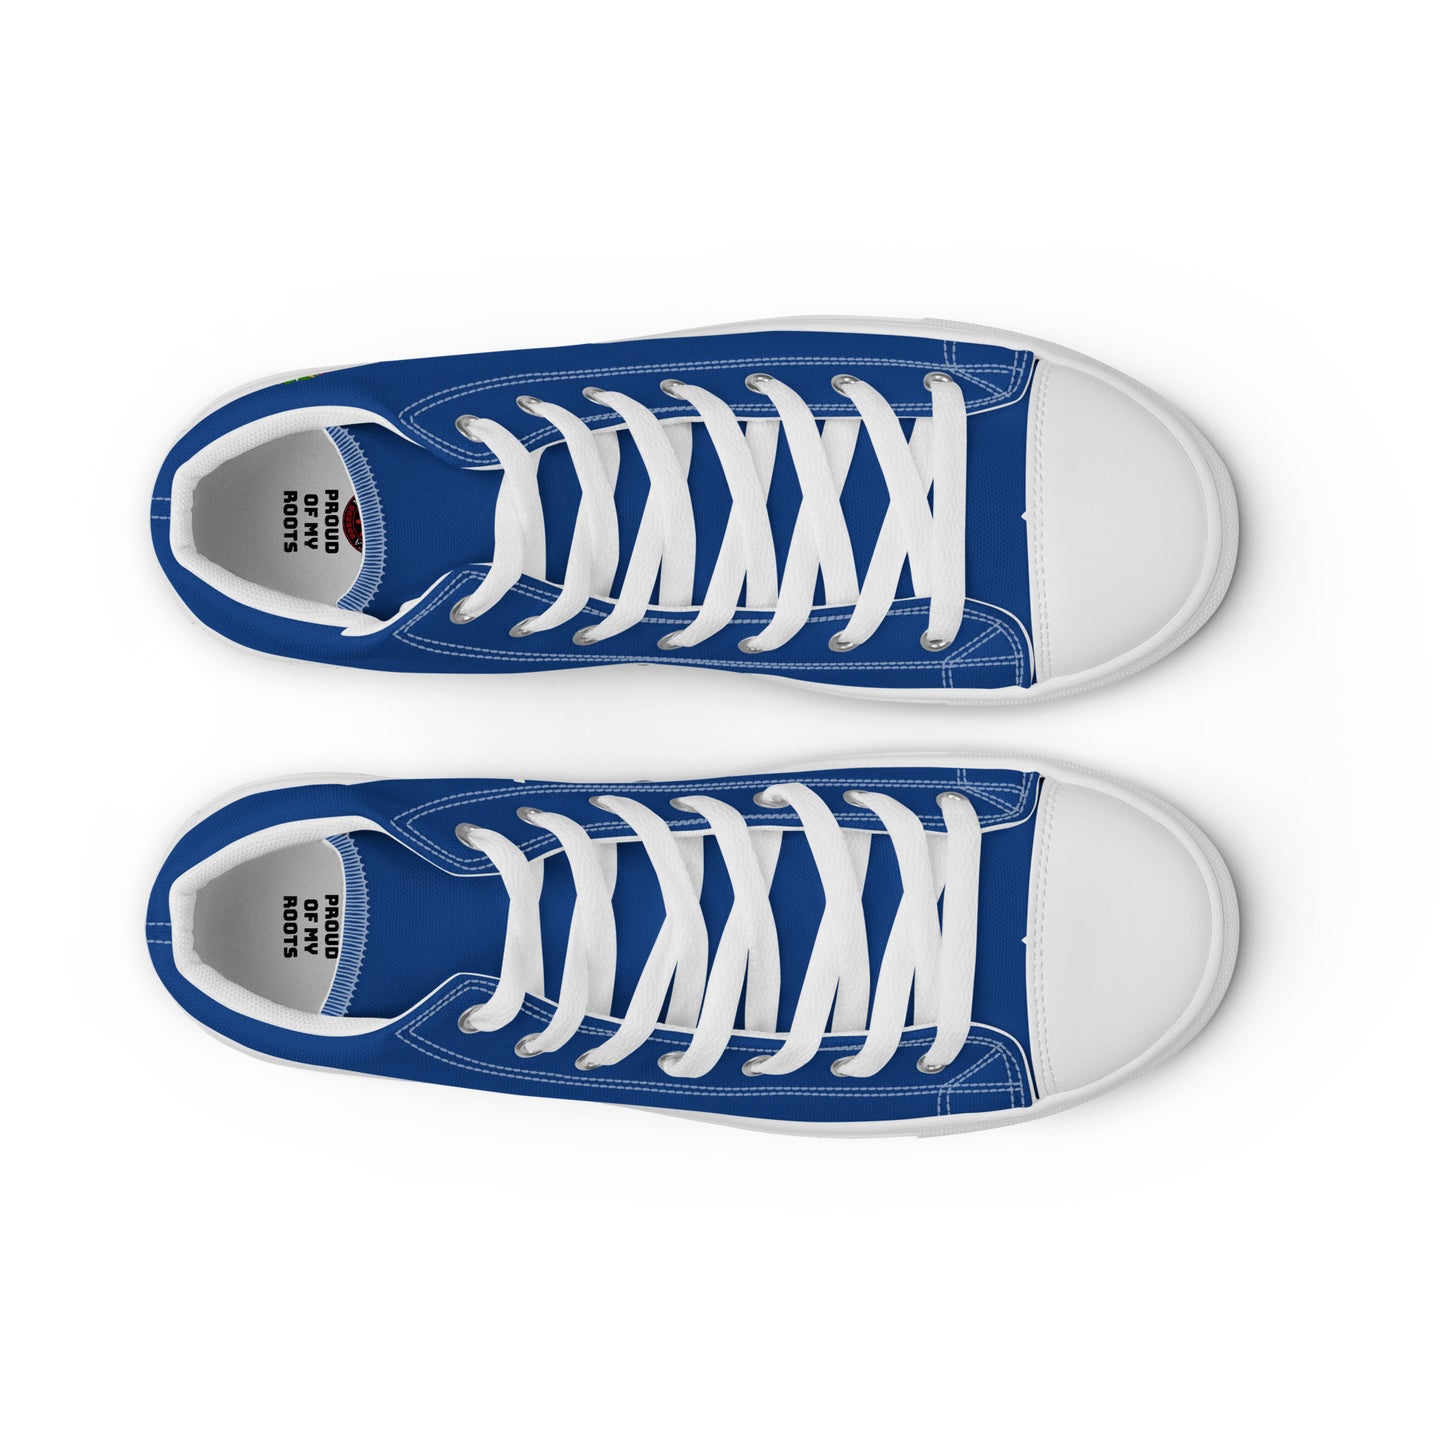 Honduras - Hombre - Azul - Zapatos High top